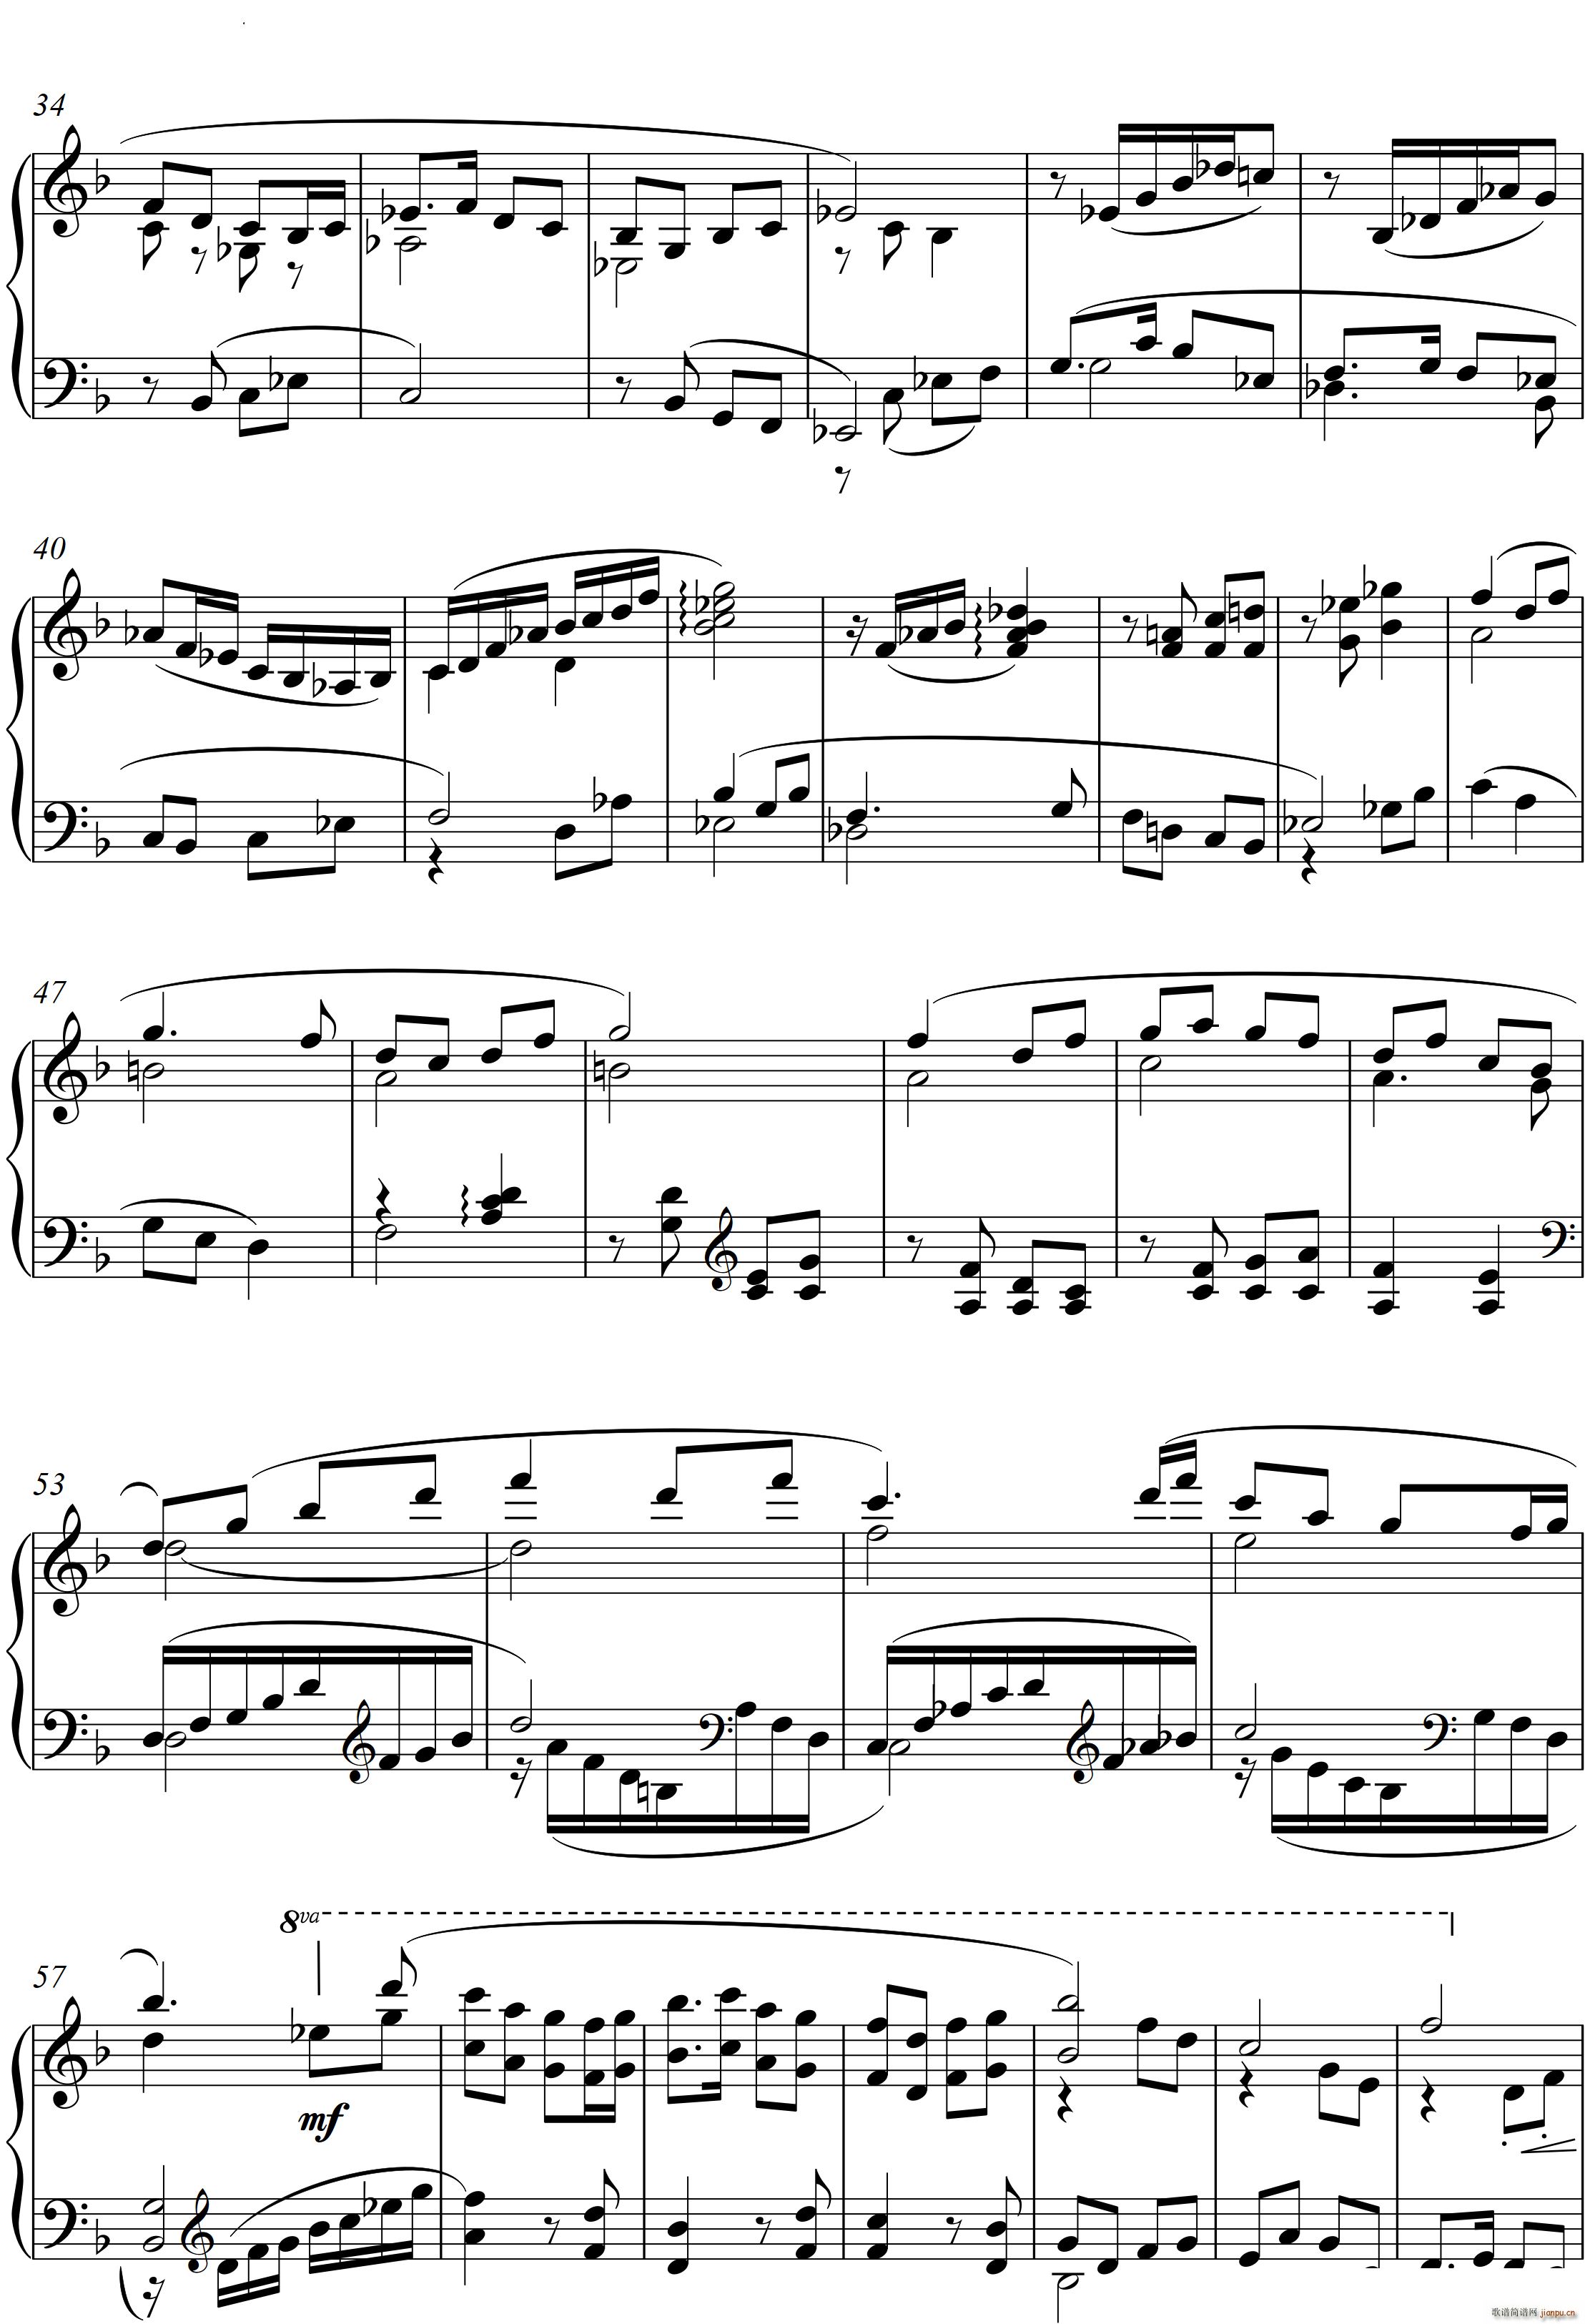 第23钢琴奏鸣曲 高甲缘 Piano Sonata No 23三个乐章(钢琴谱)15